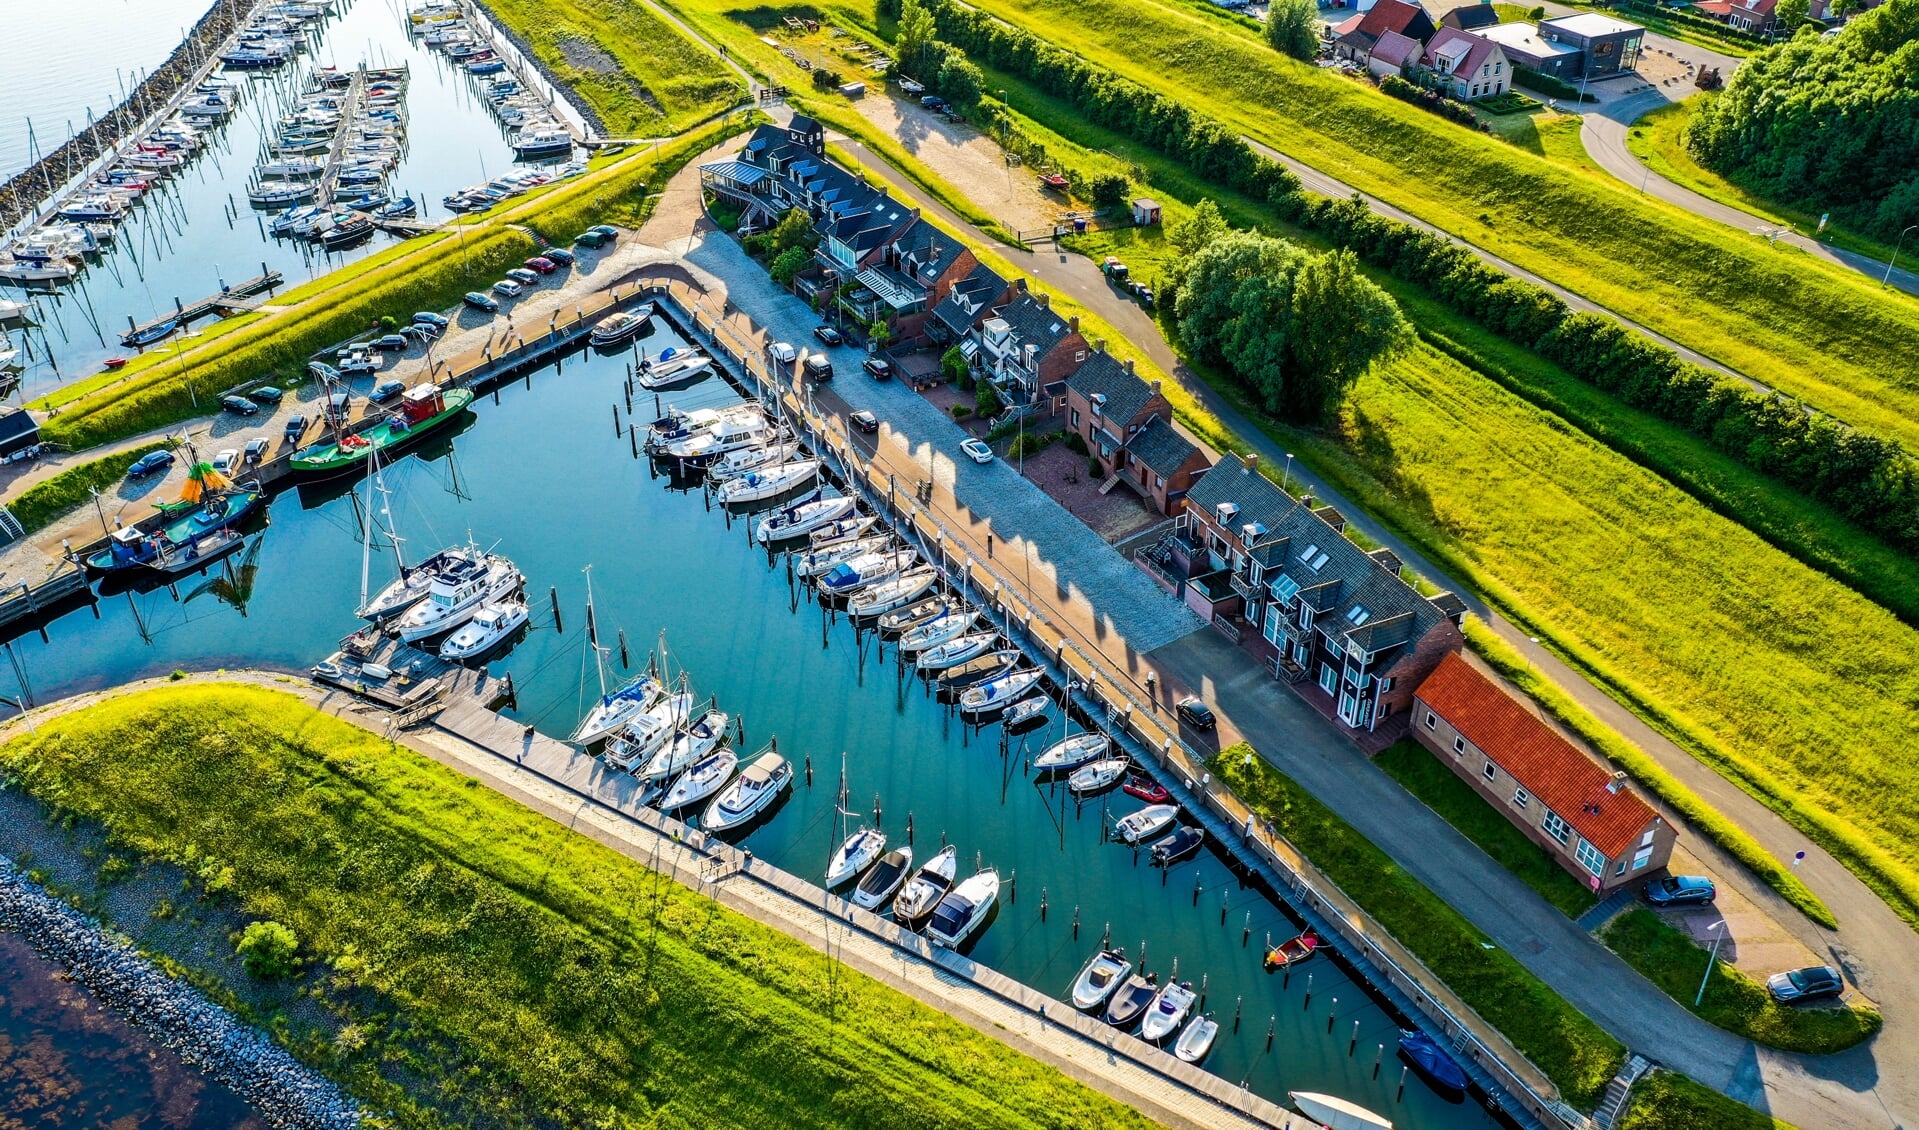 De Ouddorpse haven vanuit de lucht (Foto: bjornmierop.nl).